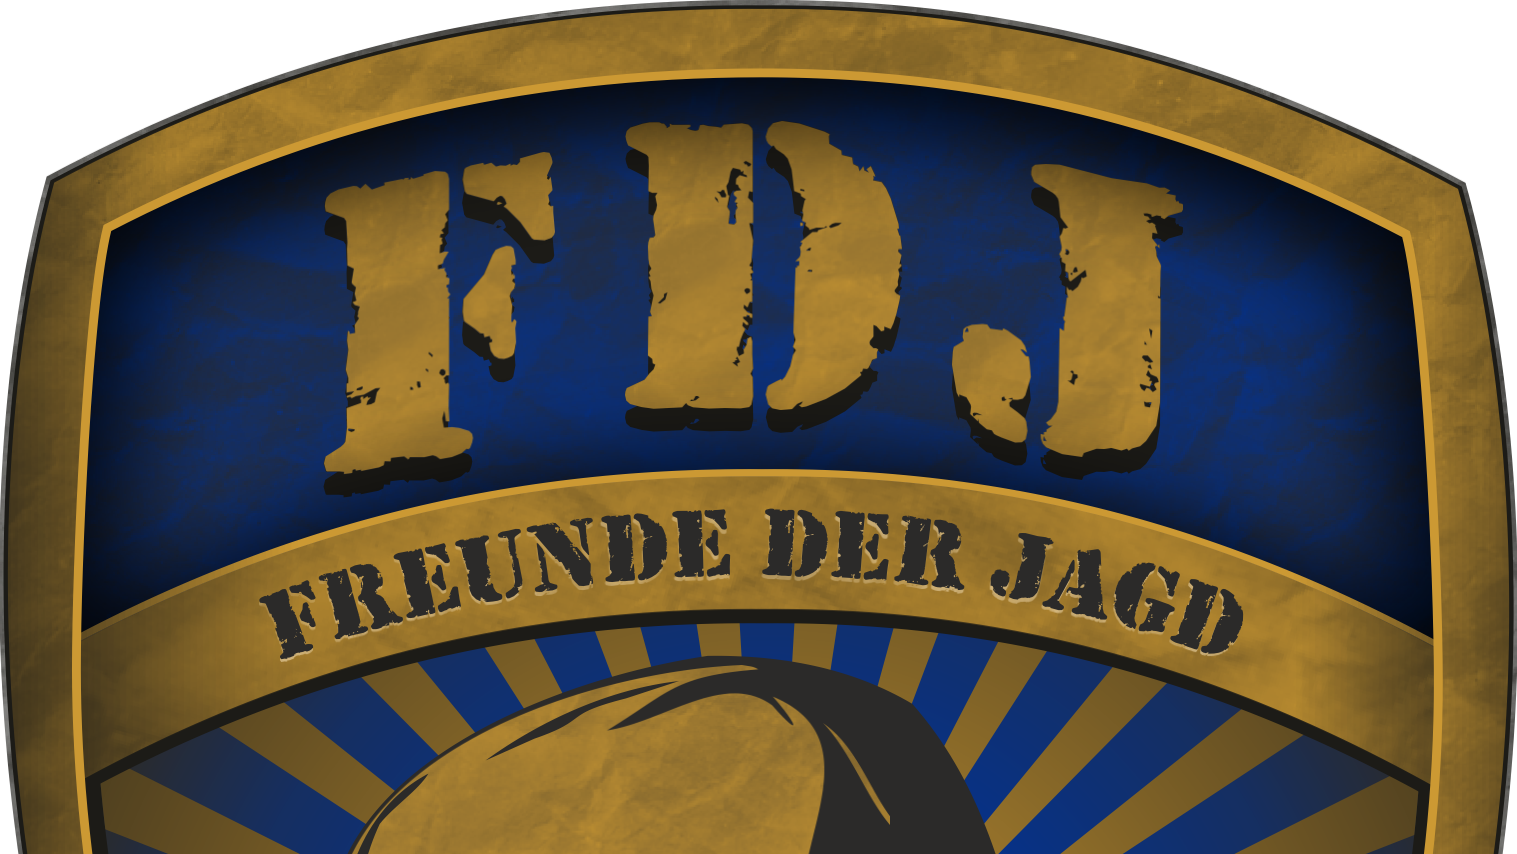 FDJ-Brigade